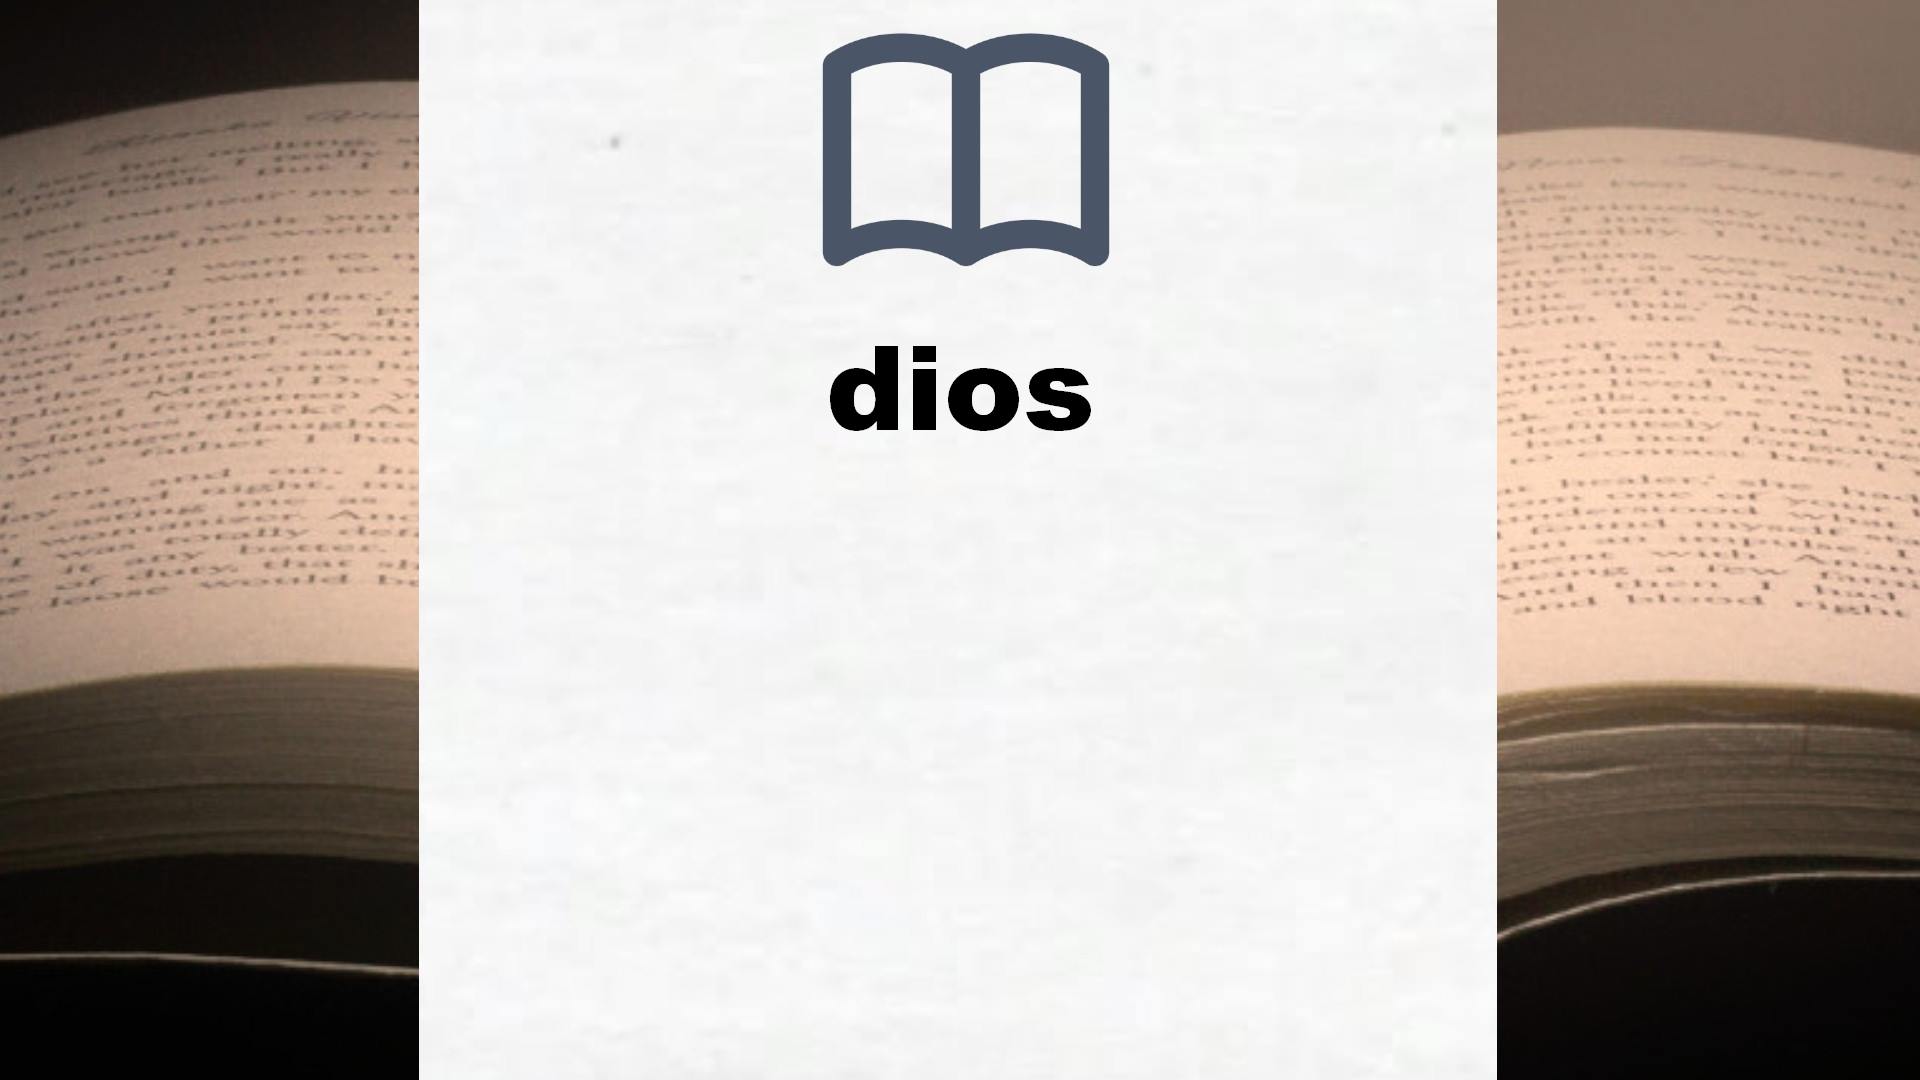 Libros sobre dios